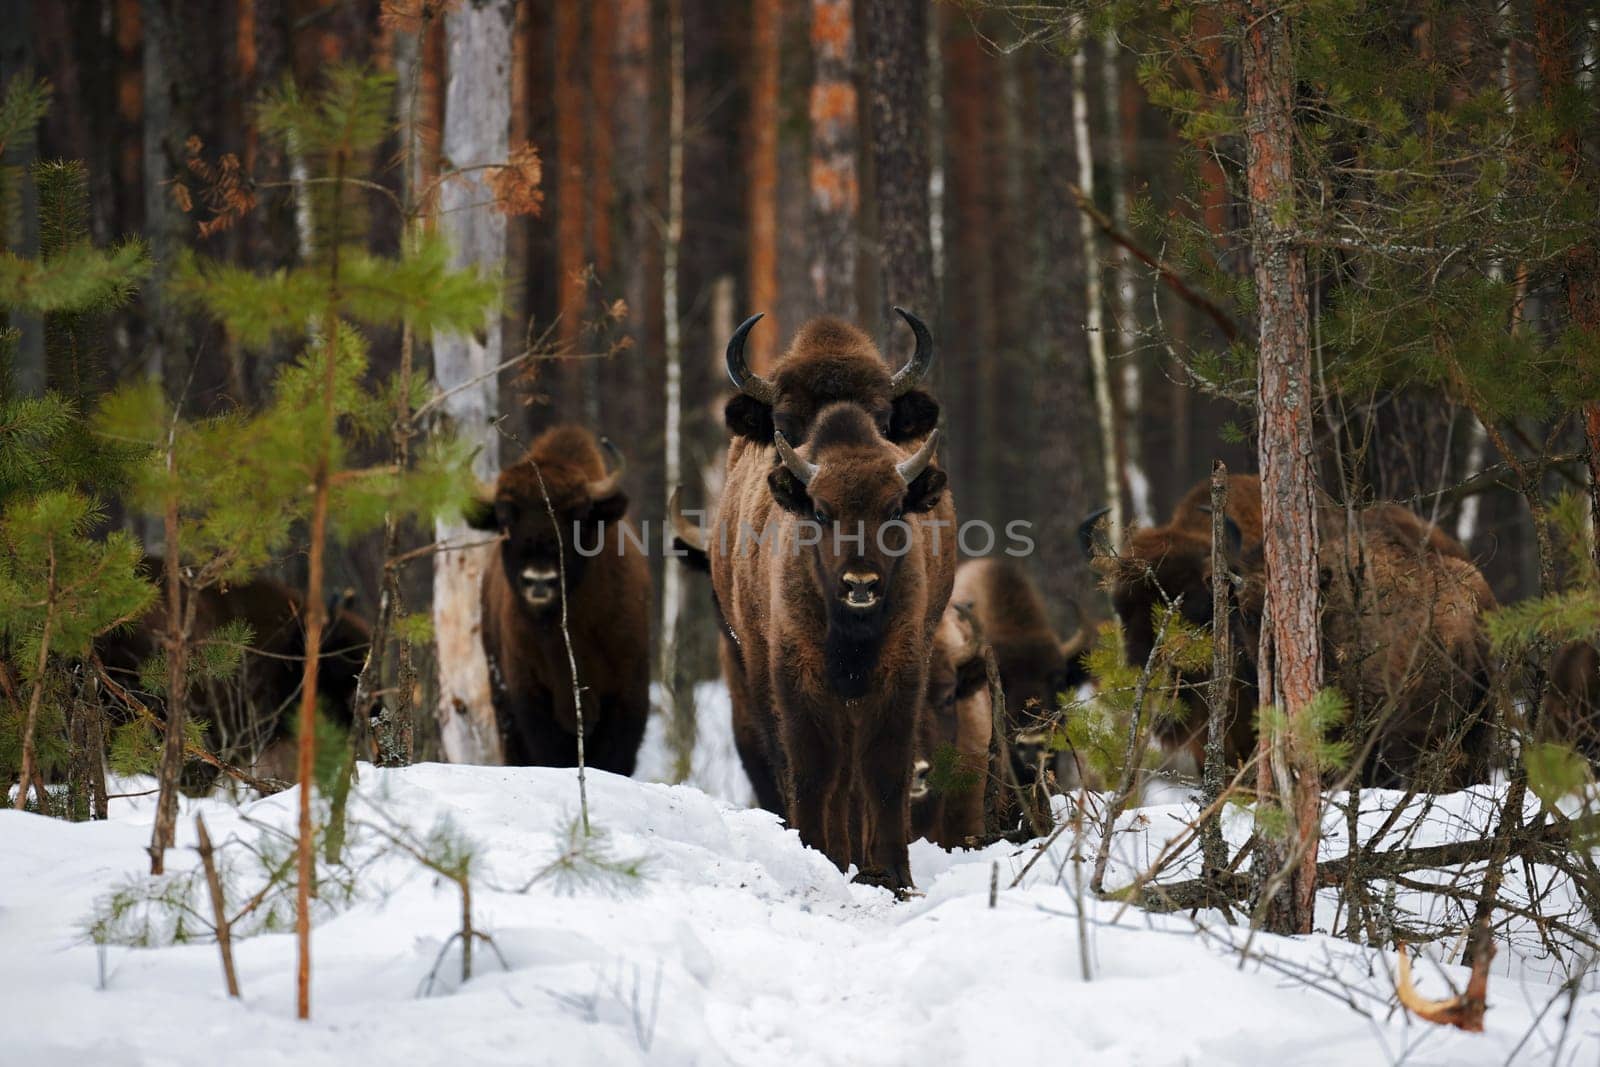 Wild European Bisons family in Winter Forest. European bison - Bison bonasus, artiodactyl mammals of the genus bison.